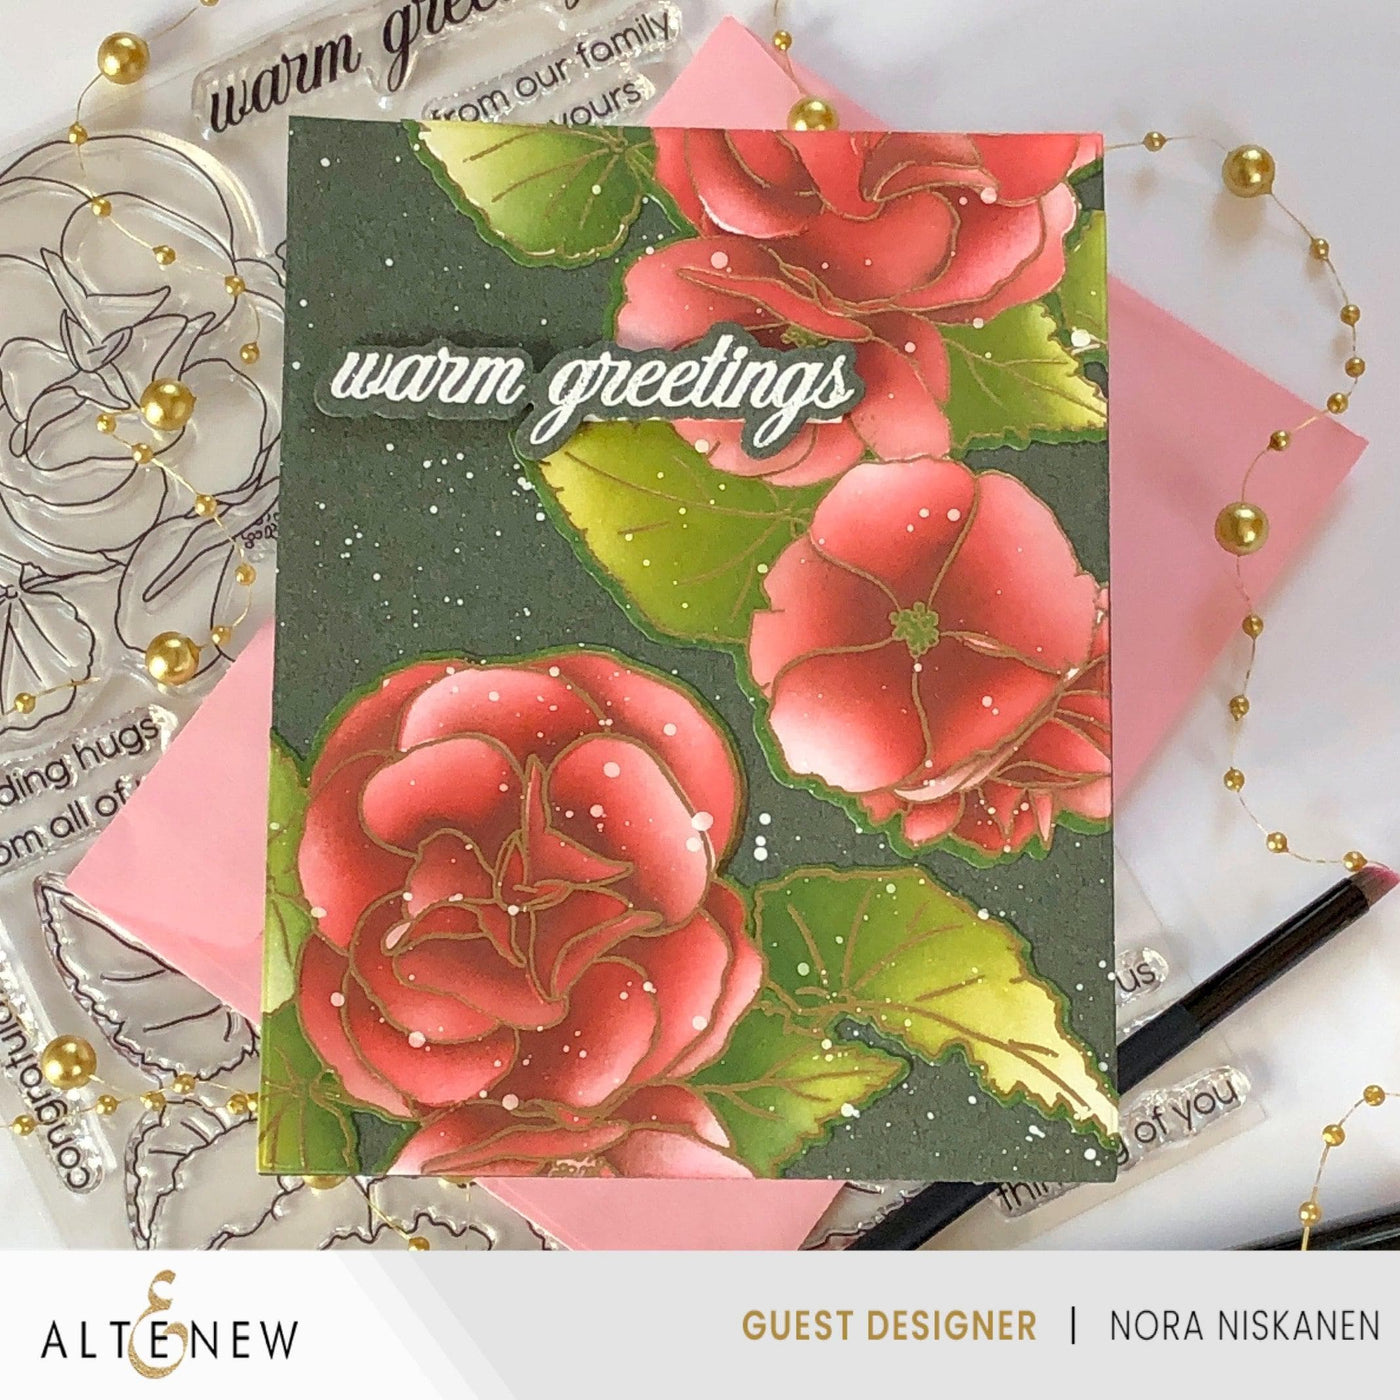 Altenew Build-A-Garden Bundle Build-A-Garden: Frilly Begonia & Add-on Die Bundle